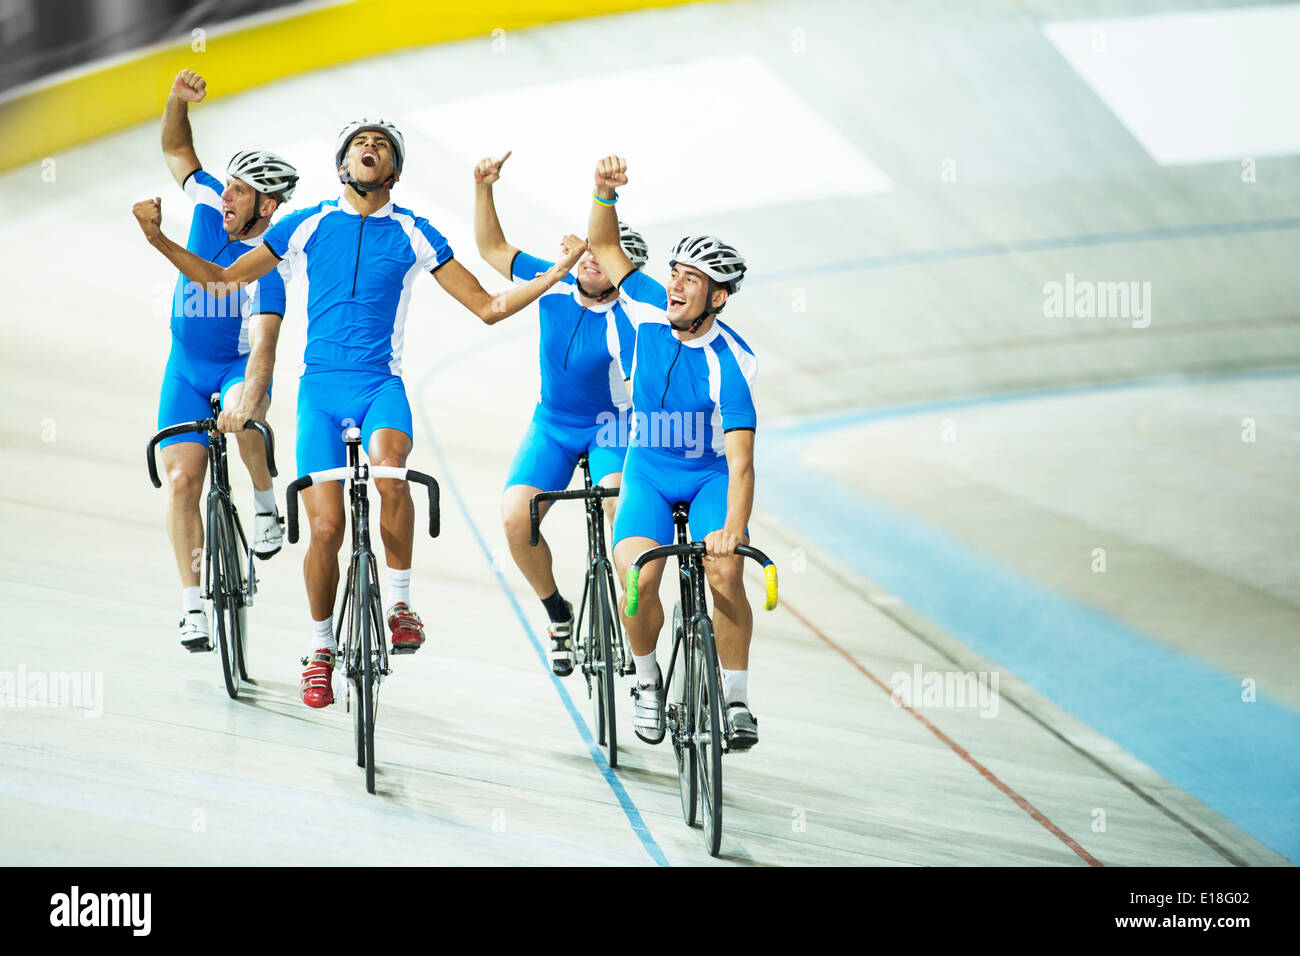 L'équipe de cyclisme sur piste célébrer sur la voie Banque D'Images